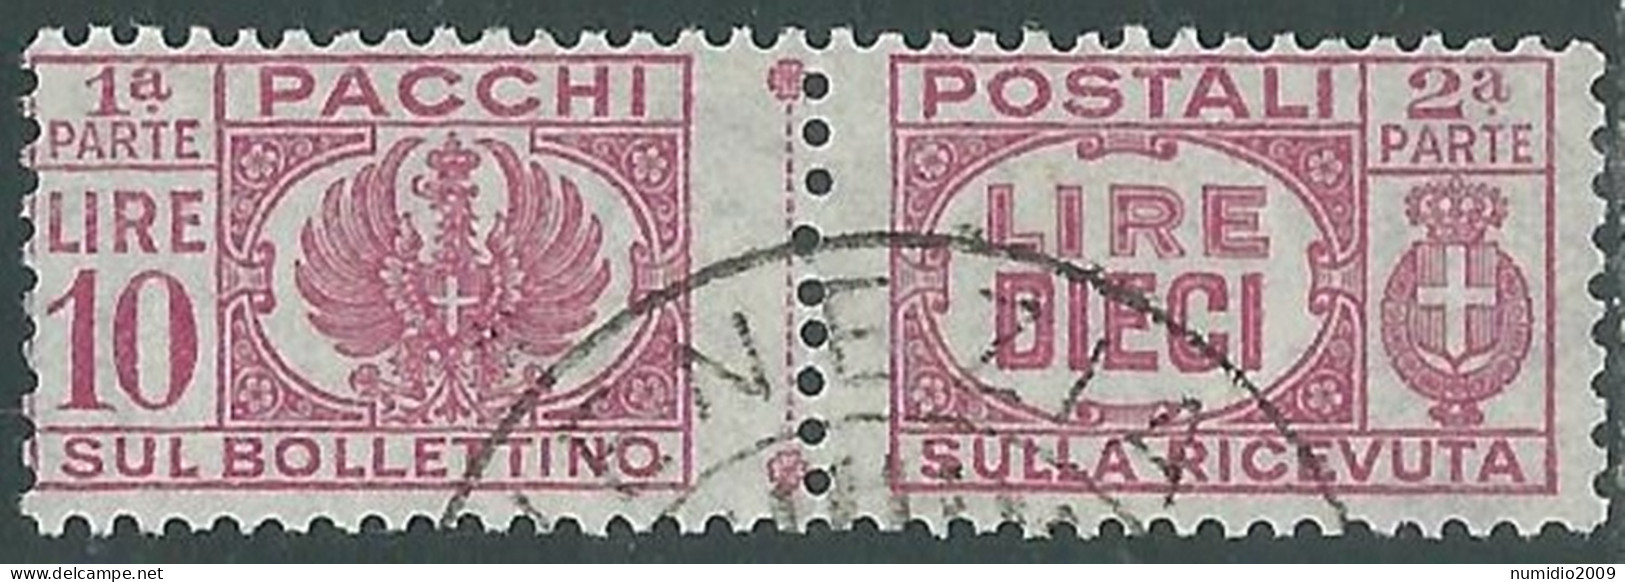 1946 LUOGOTENENZA PACCHI POSTALI USATO 10 LIRE - P31-10 - Paketmarken